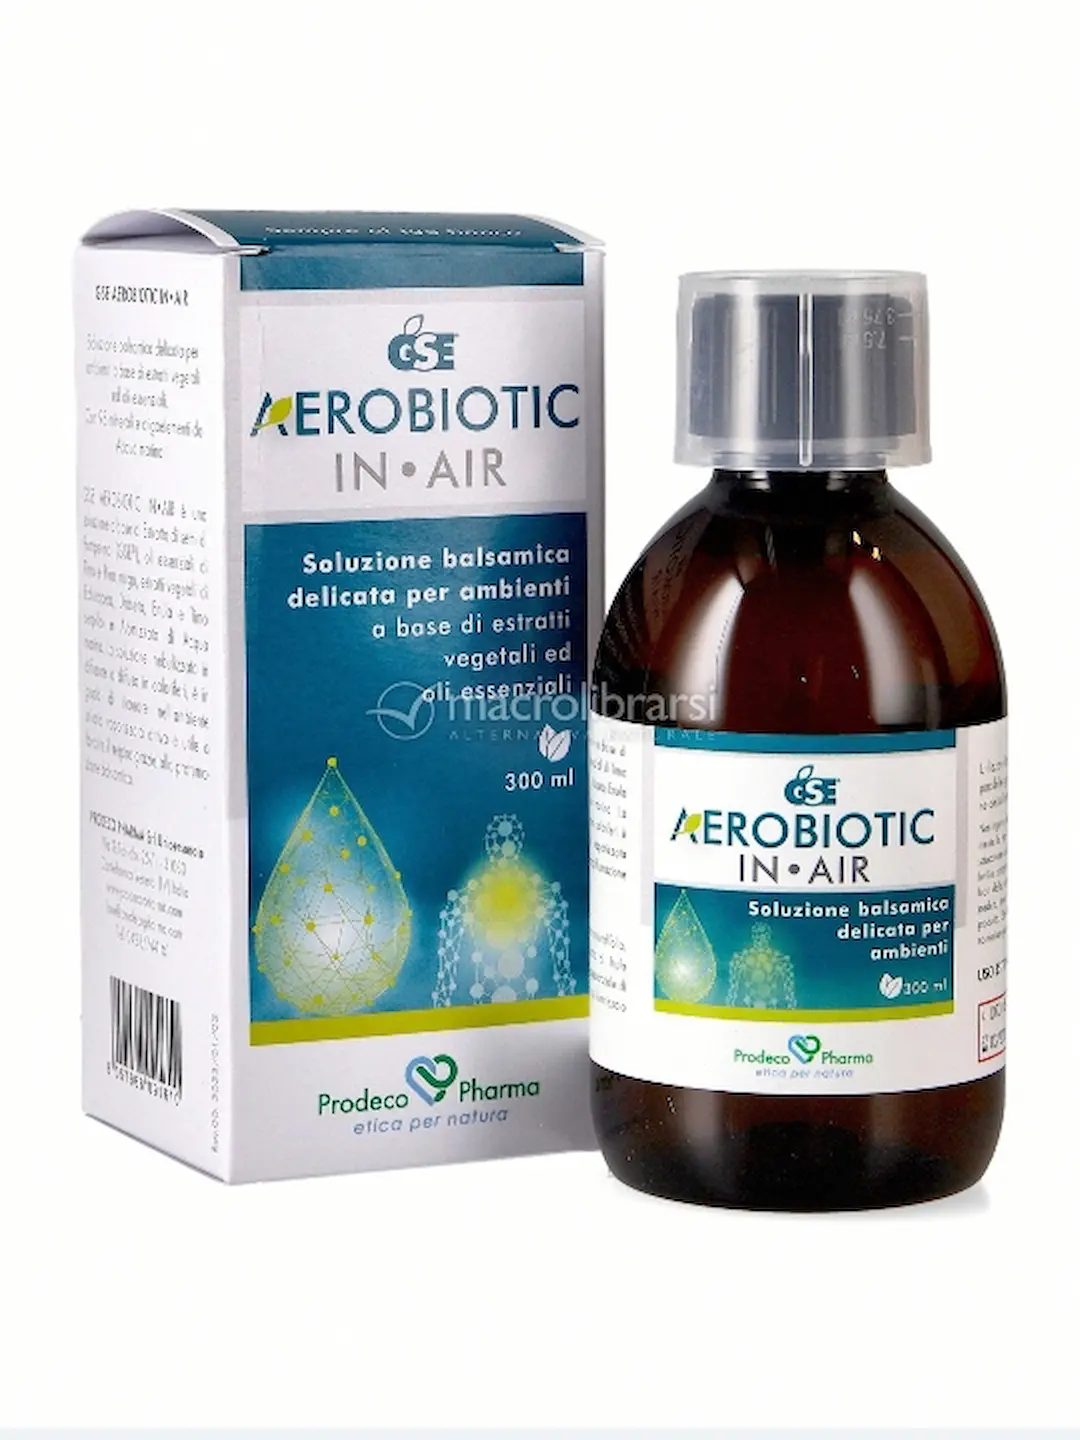 25% di Sconto all'acquisto di Aerobiotic IN AIR, soluzione balsamica per ambienti.